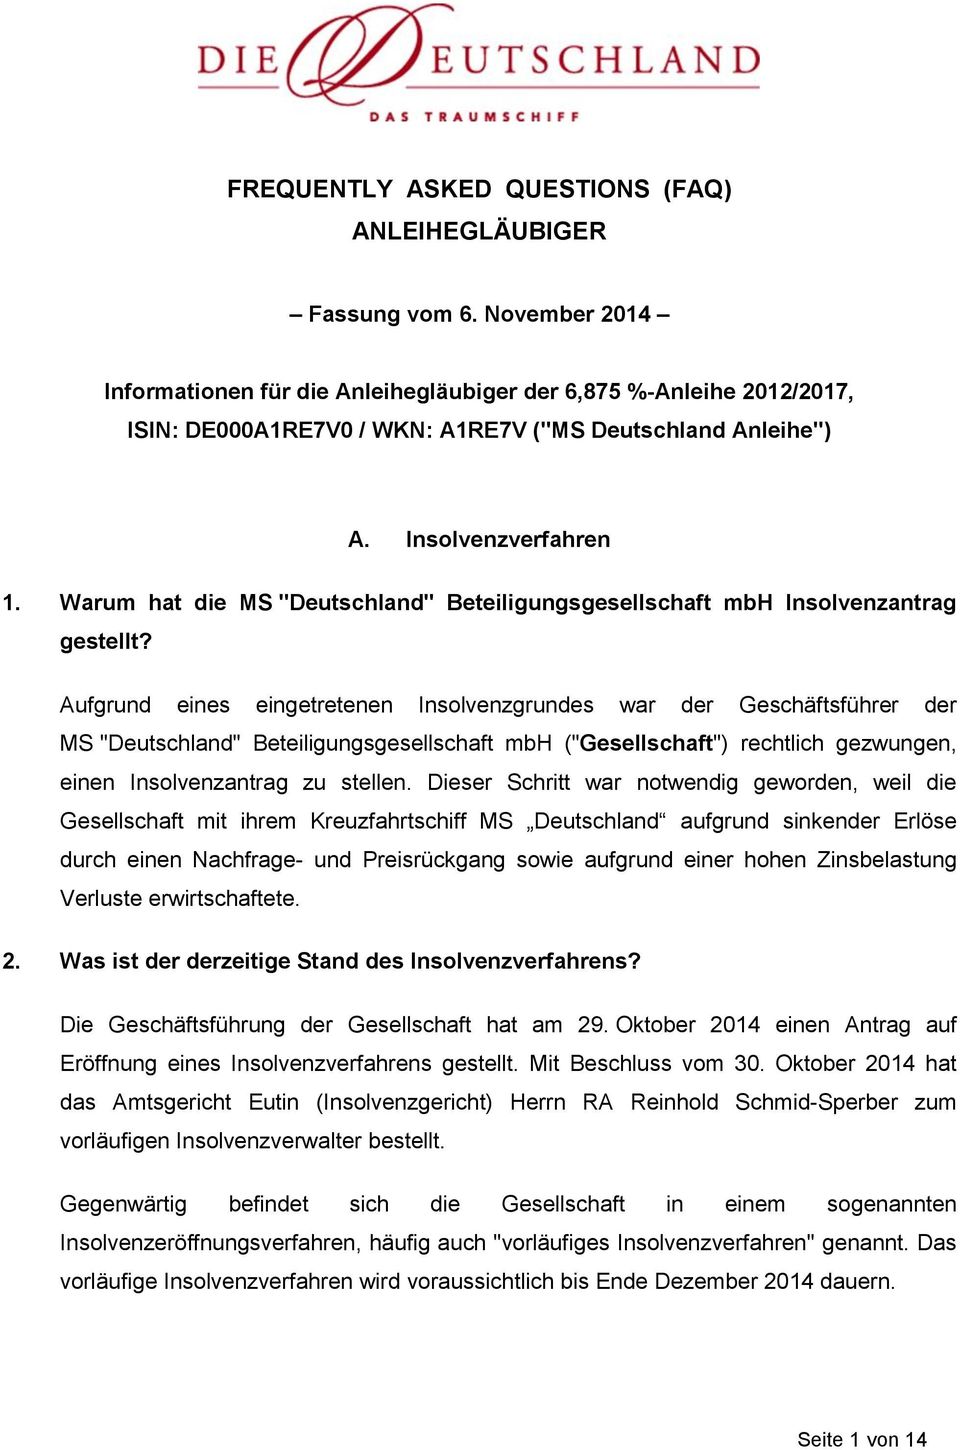 Warum hat die MS "Deutschland" Beteiligungsgesellschaft mbh Insolvenzantrag gestellt?